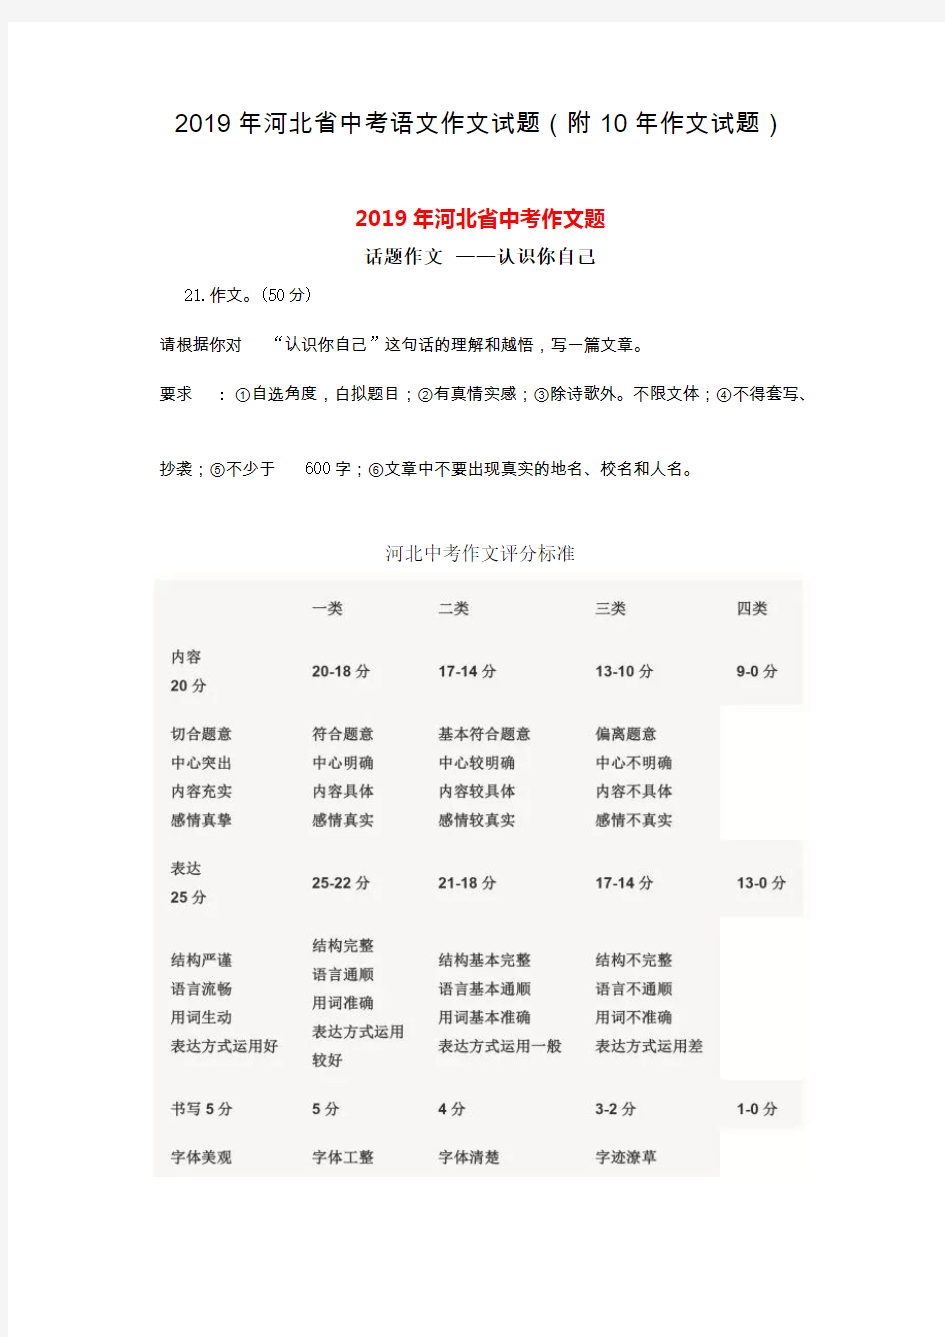 (完整版)2019年河北省中考语文作文试题(附10年作文题目要求)